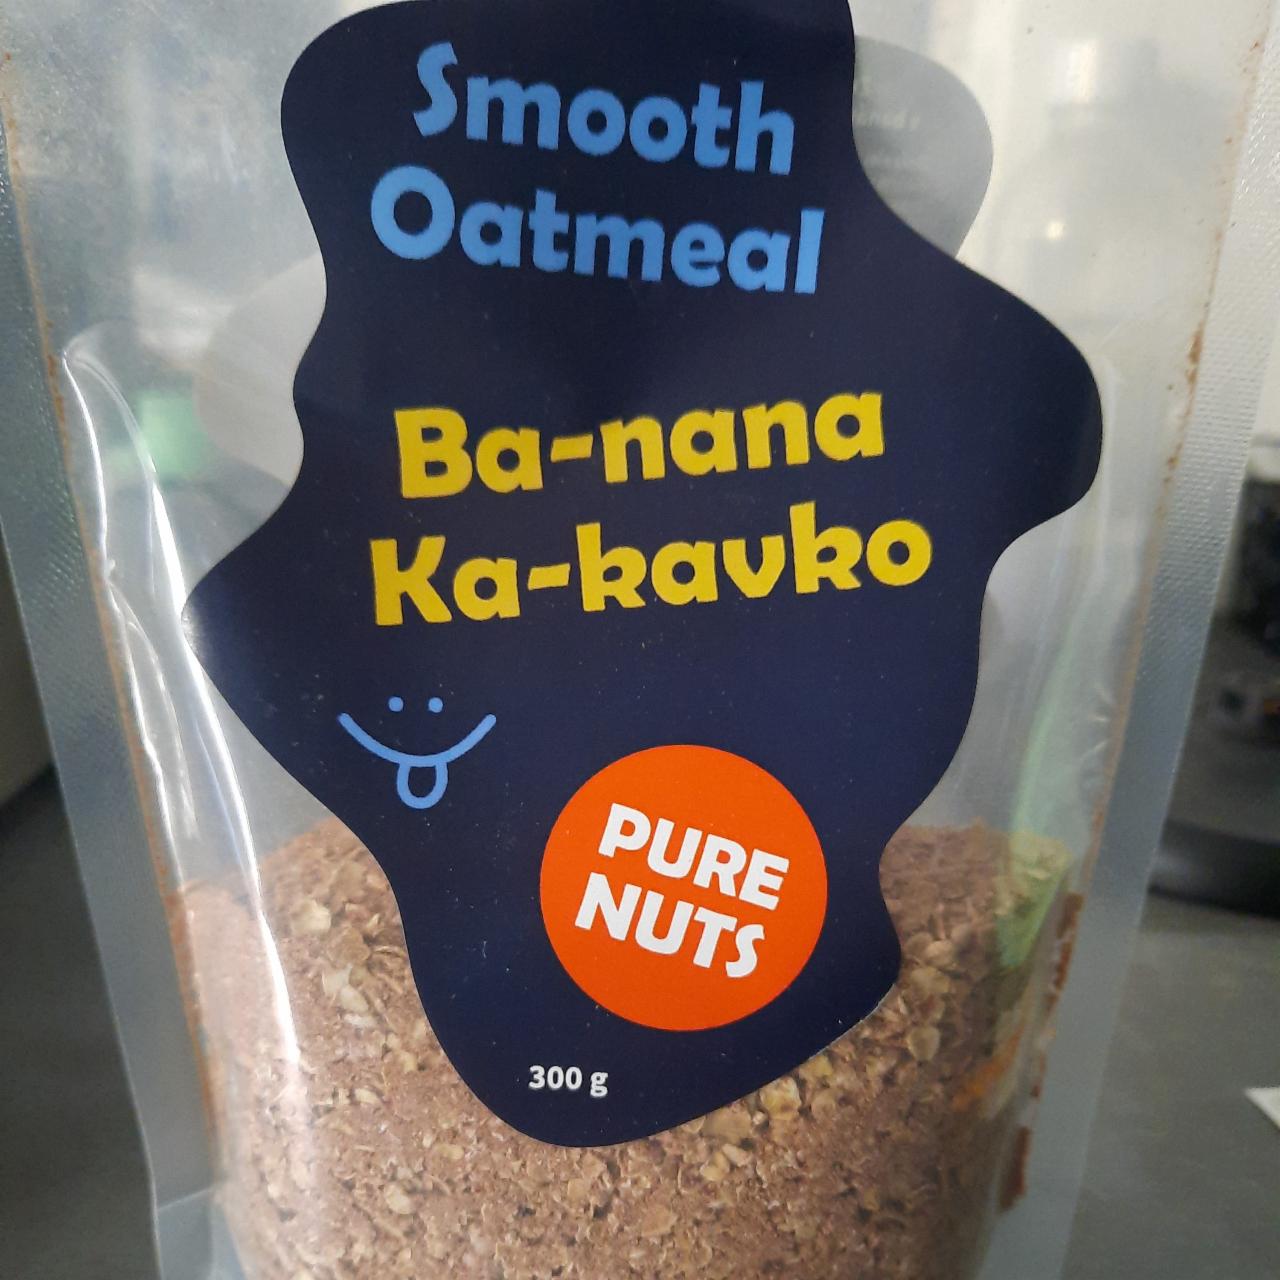 Fotografie - Smooth Oatmeal Ba-nana Ka-kavko Pure Nuts